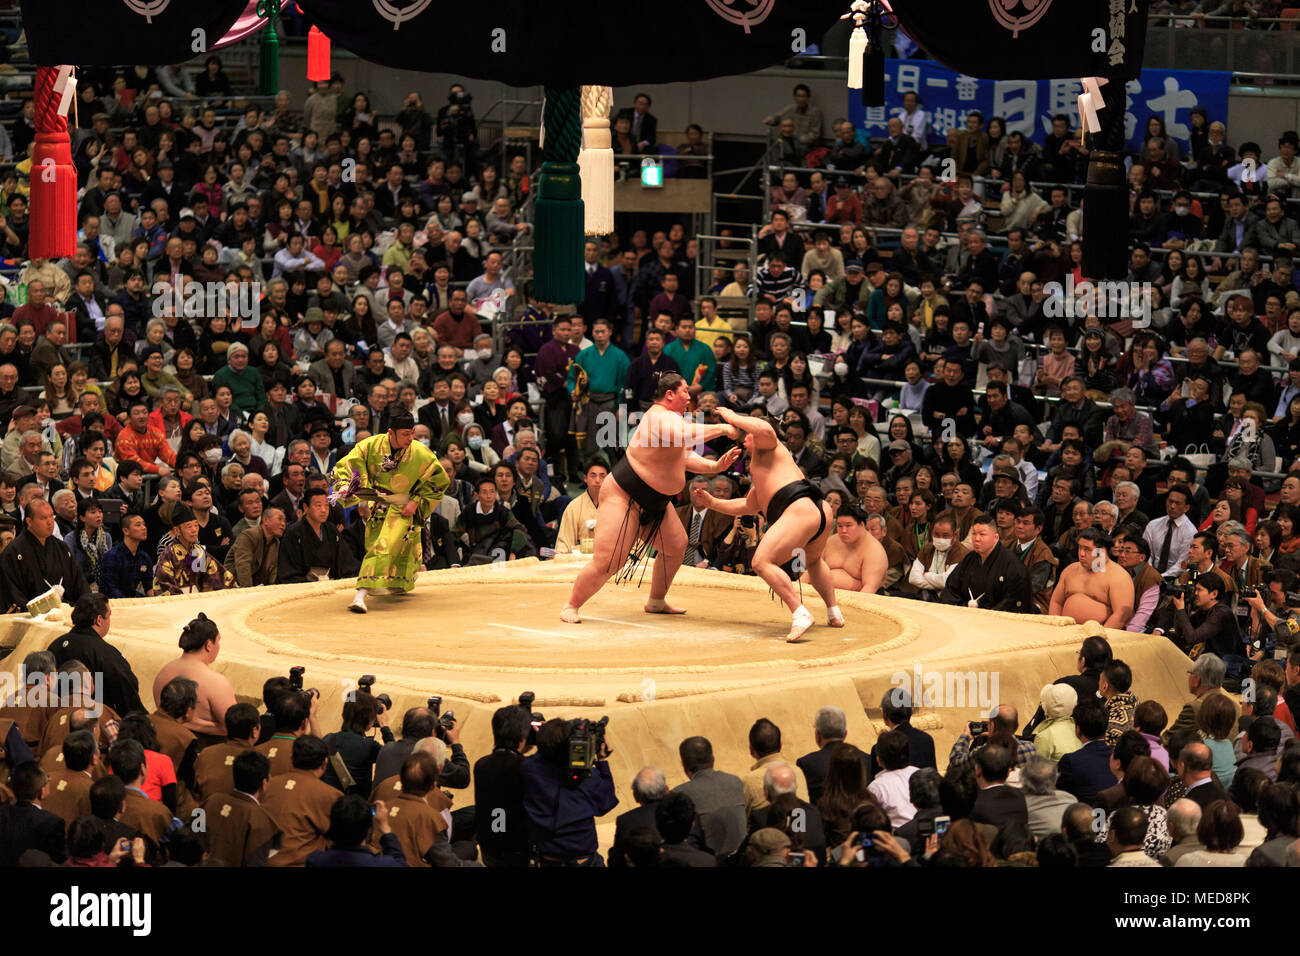 Osaka, Japan - 10. März 2015: Yokozuna Harumafuji zurück erhält von einem Unbekannten wrester während der Osaka Grand Sumo Turnier gerockt Stockfoto